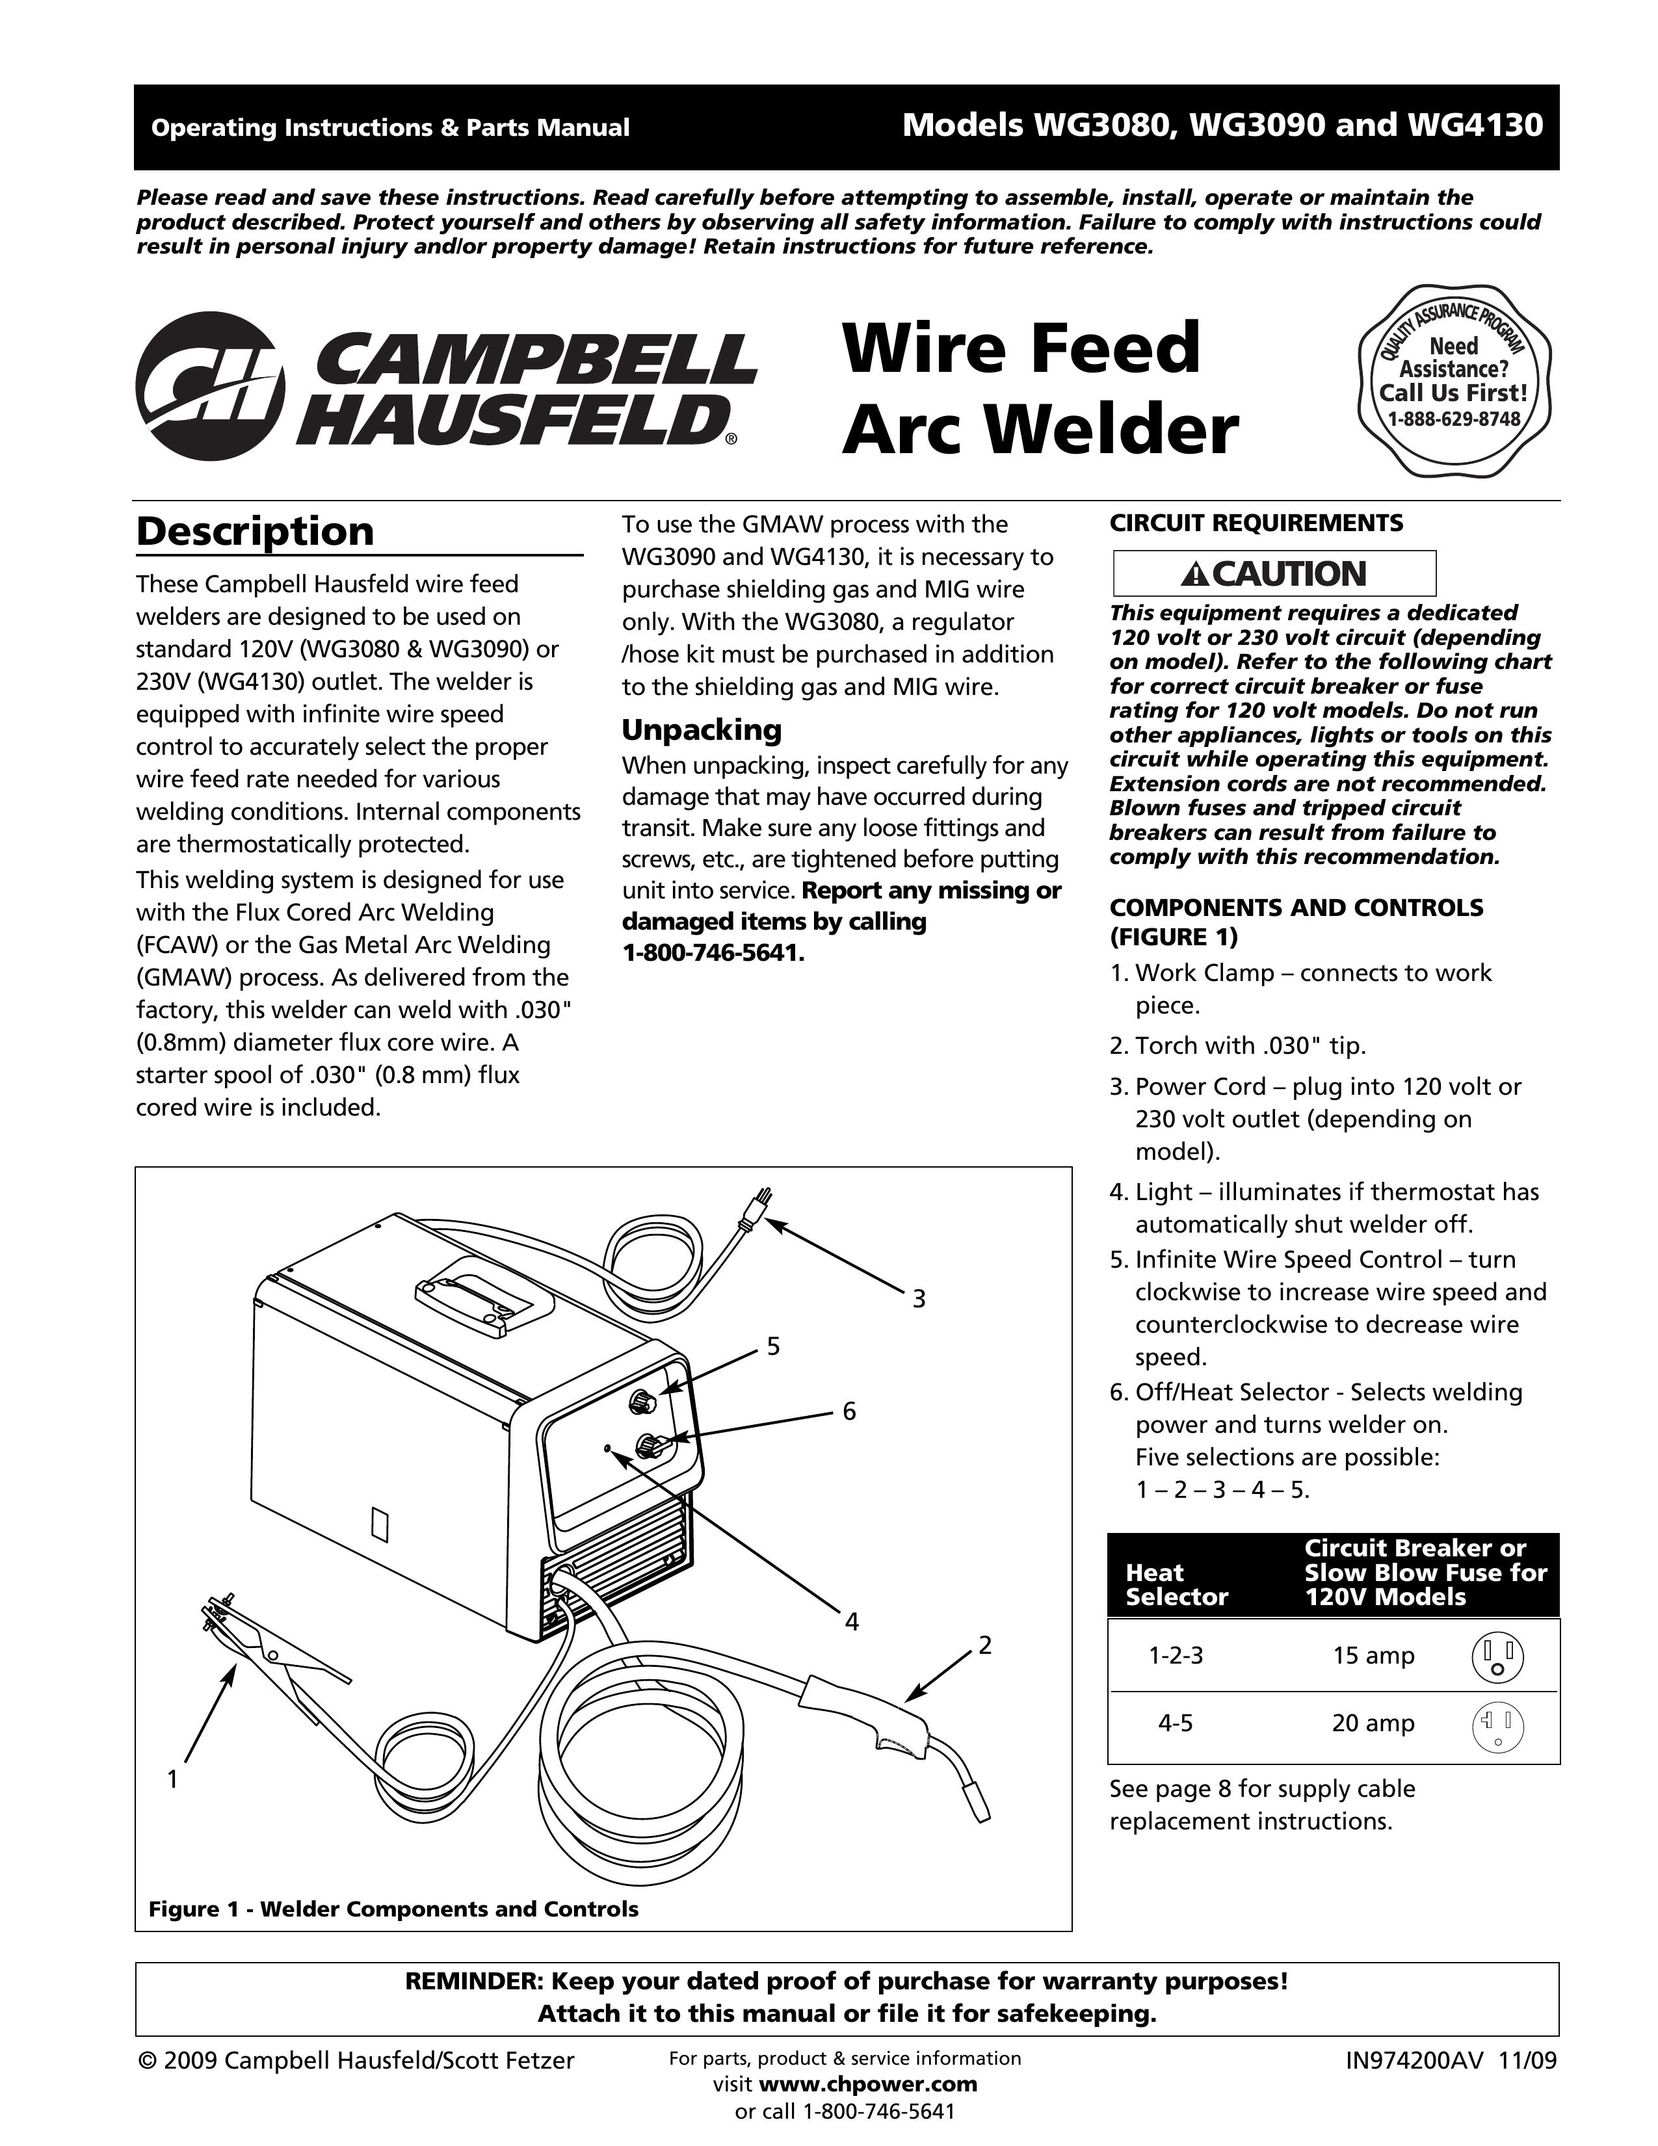 Campbell Hausfeld IN974200AV Welder User Manual